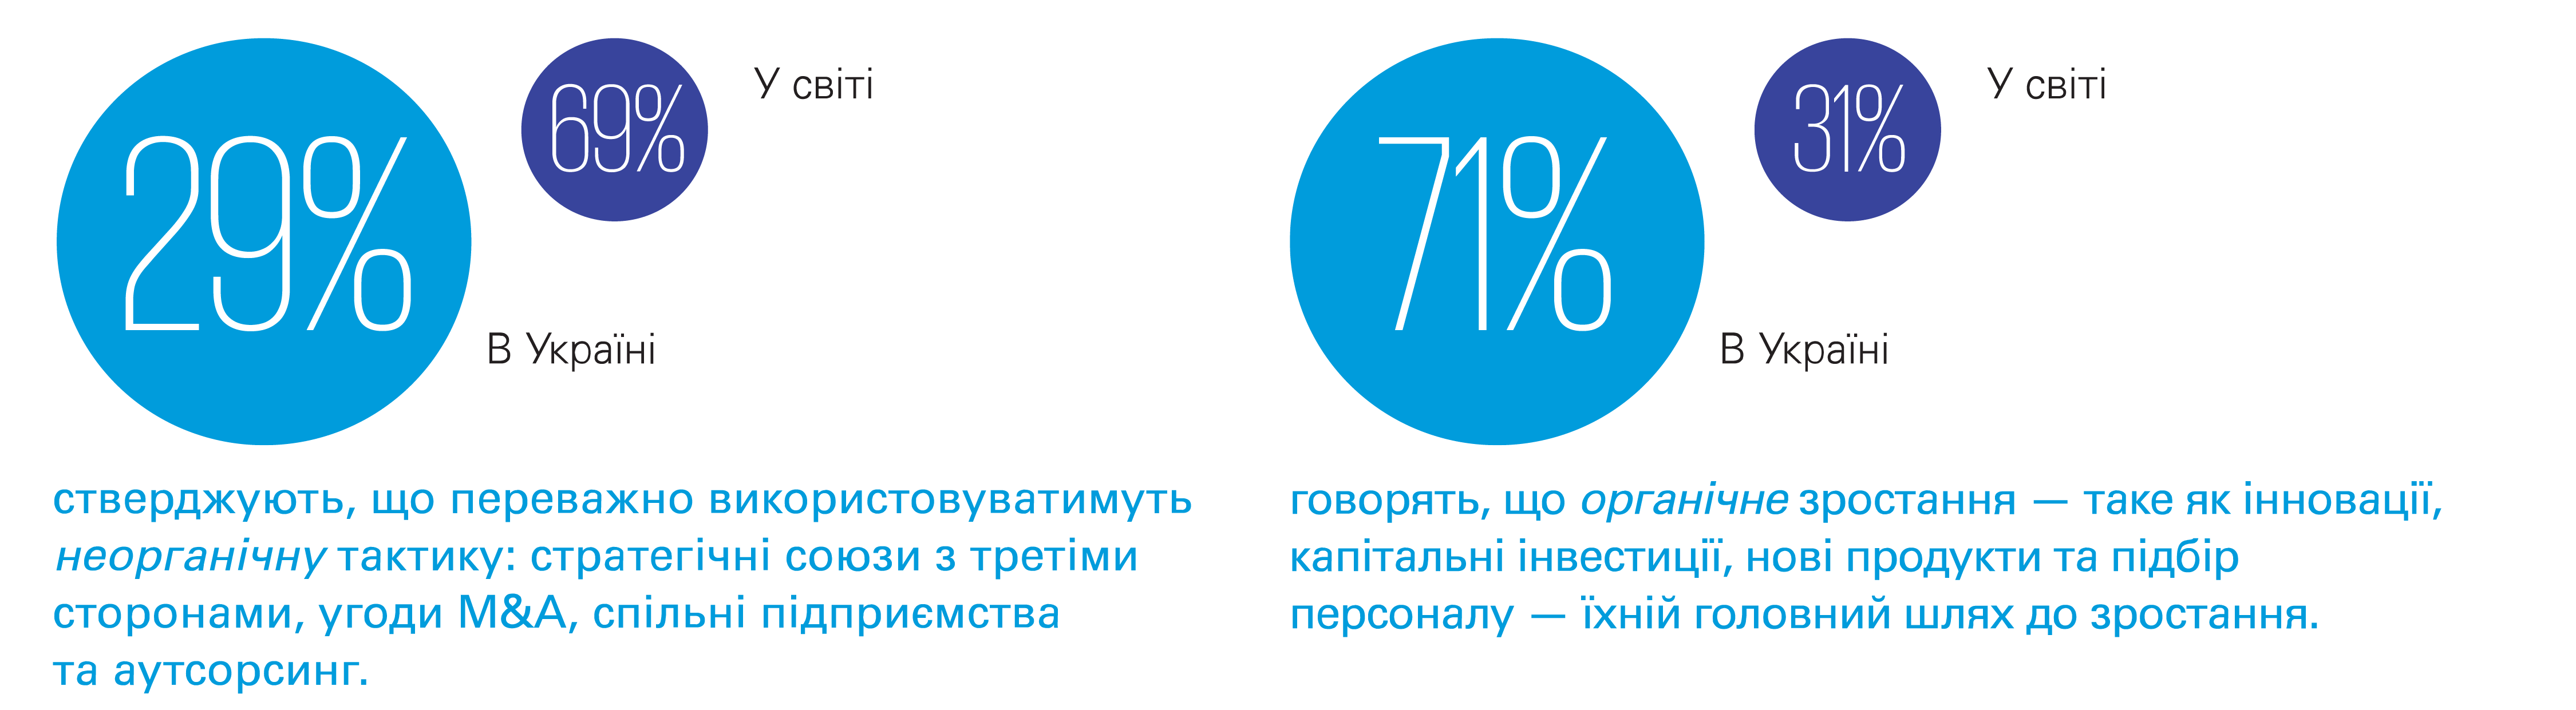 KPMG в Украине представляет результаты ежегодного исследования  «Взгляд руководителей бизнеса» в Украине и мире в 2021 году»